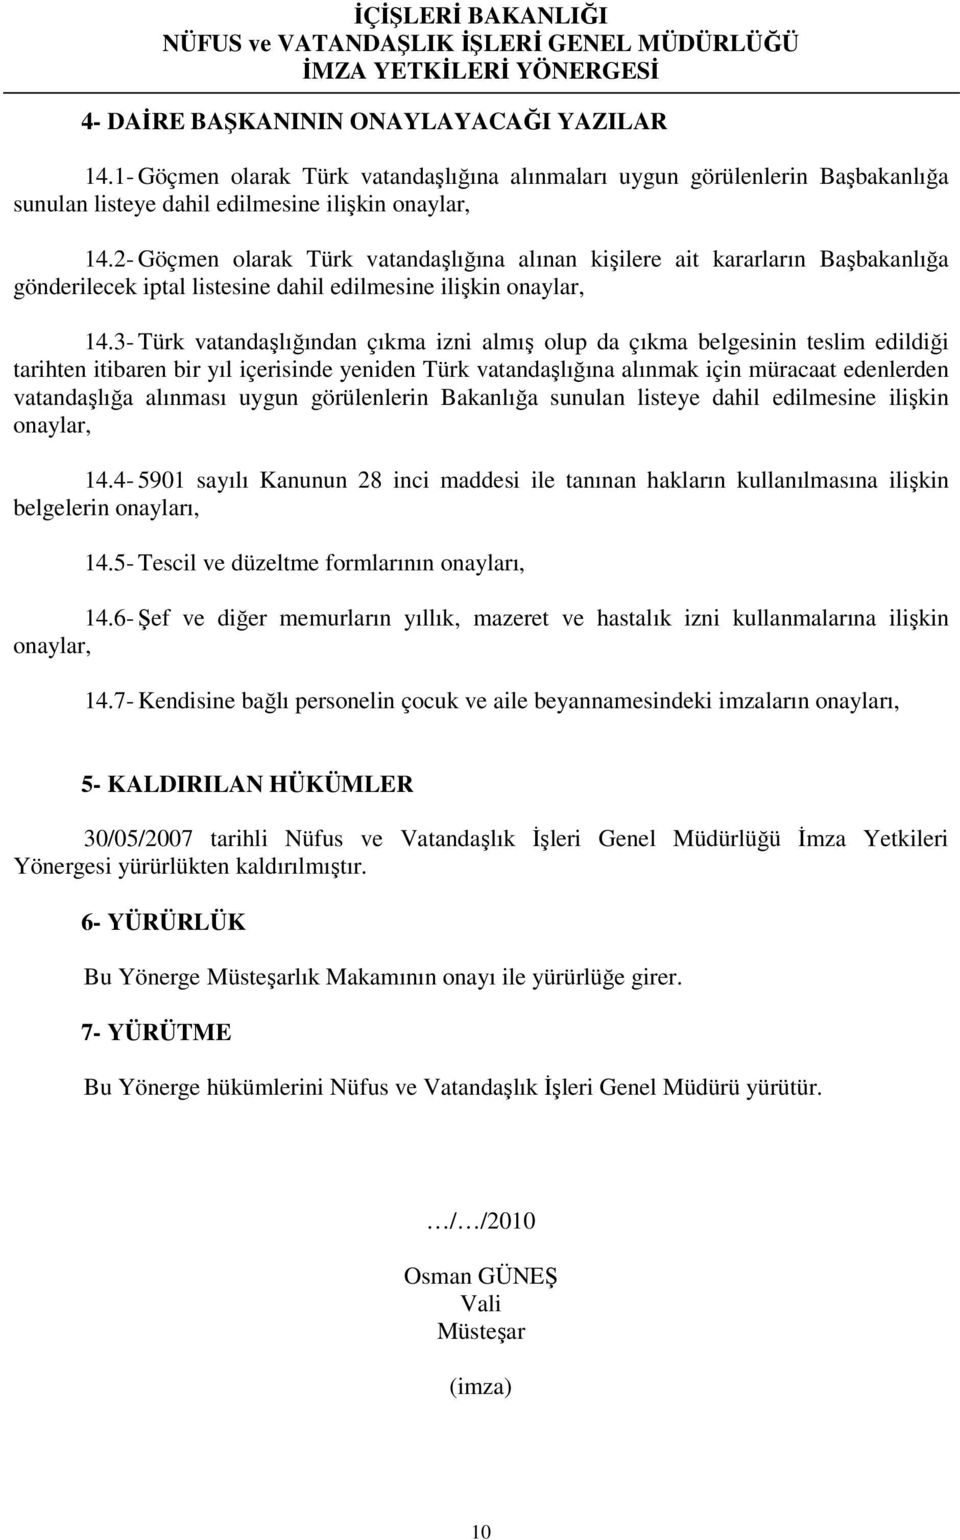 3- Türk vatandaşlığından çıkma izni almış olup da çıkma belgesinin teslim edildiği tarihten itibaren bir yıl içerisinde yeniden Türk vatandaşlığına alınmak için müracaat edenlerden vatandaşlığa